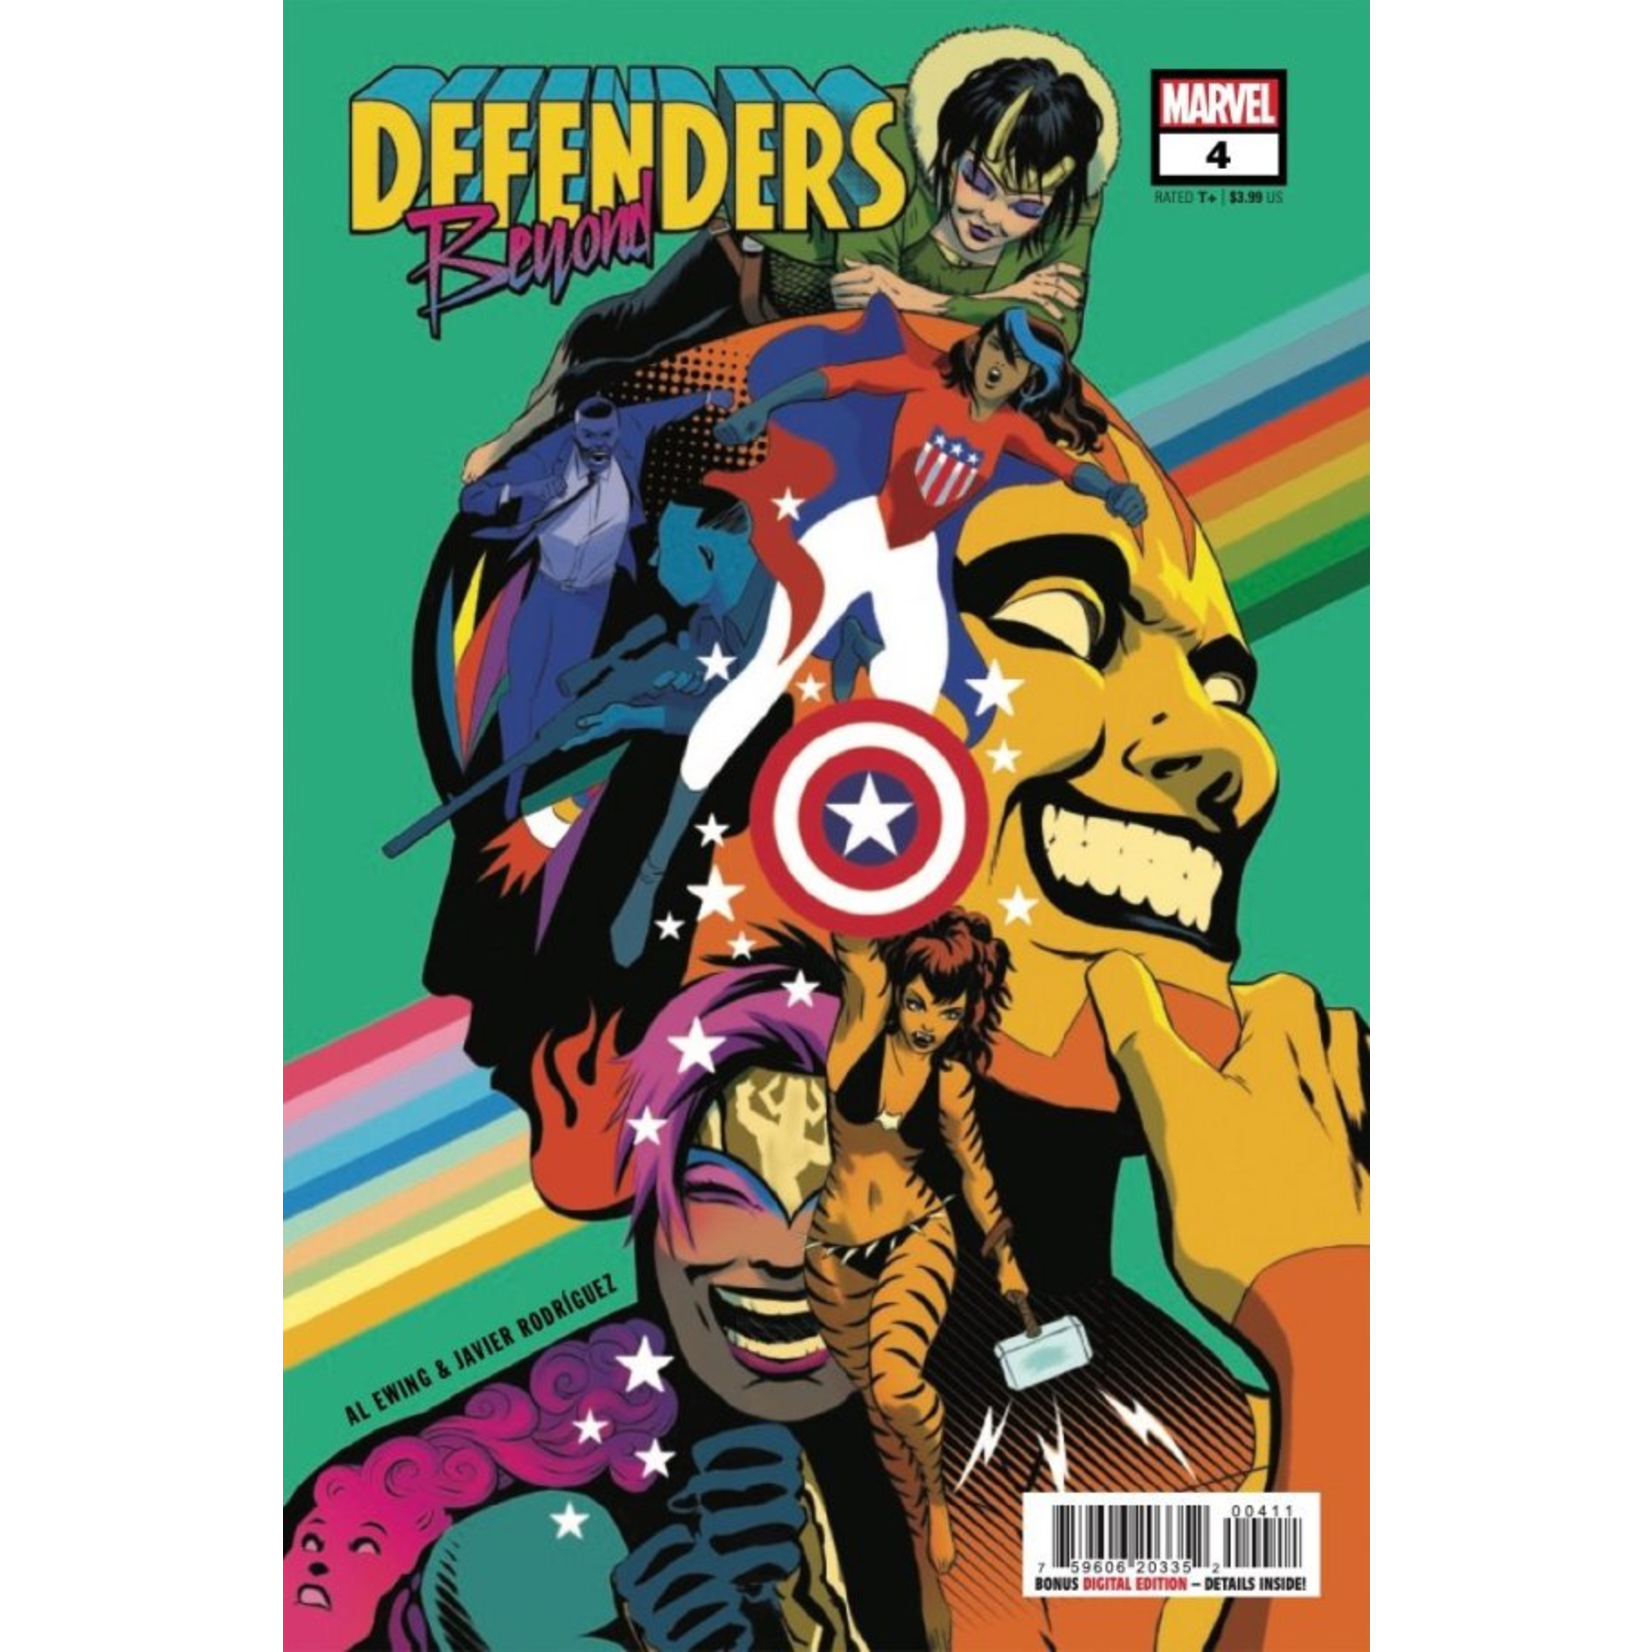 Marvel DEFENDERS: BEYOND 4